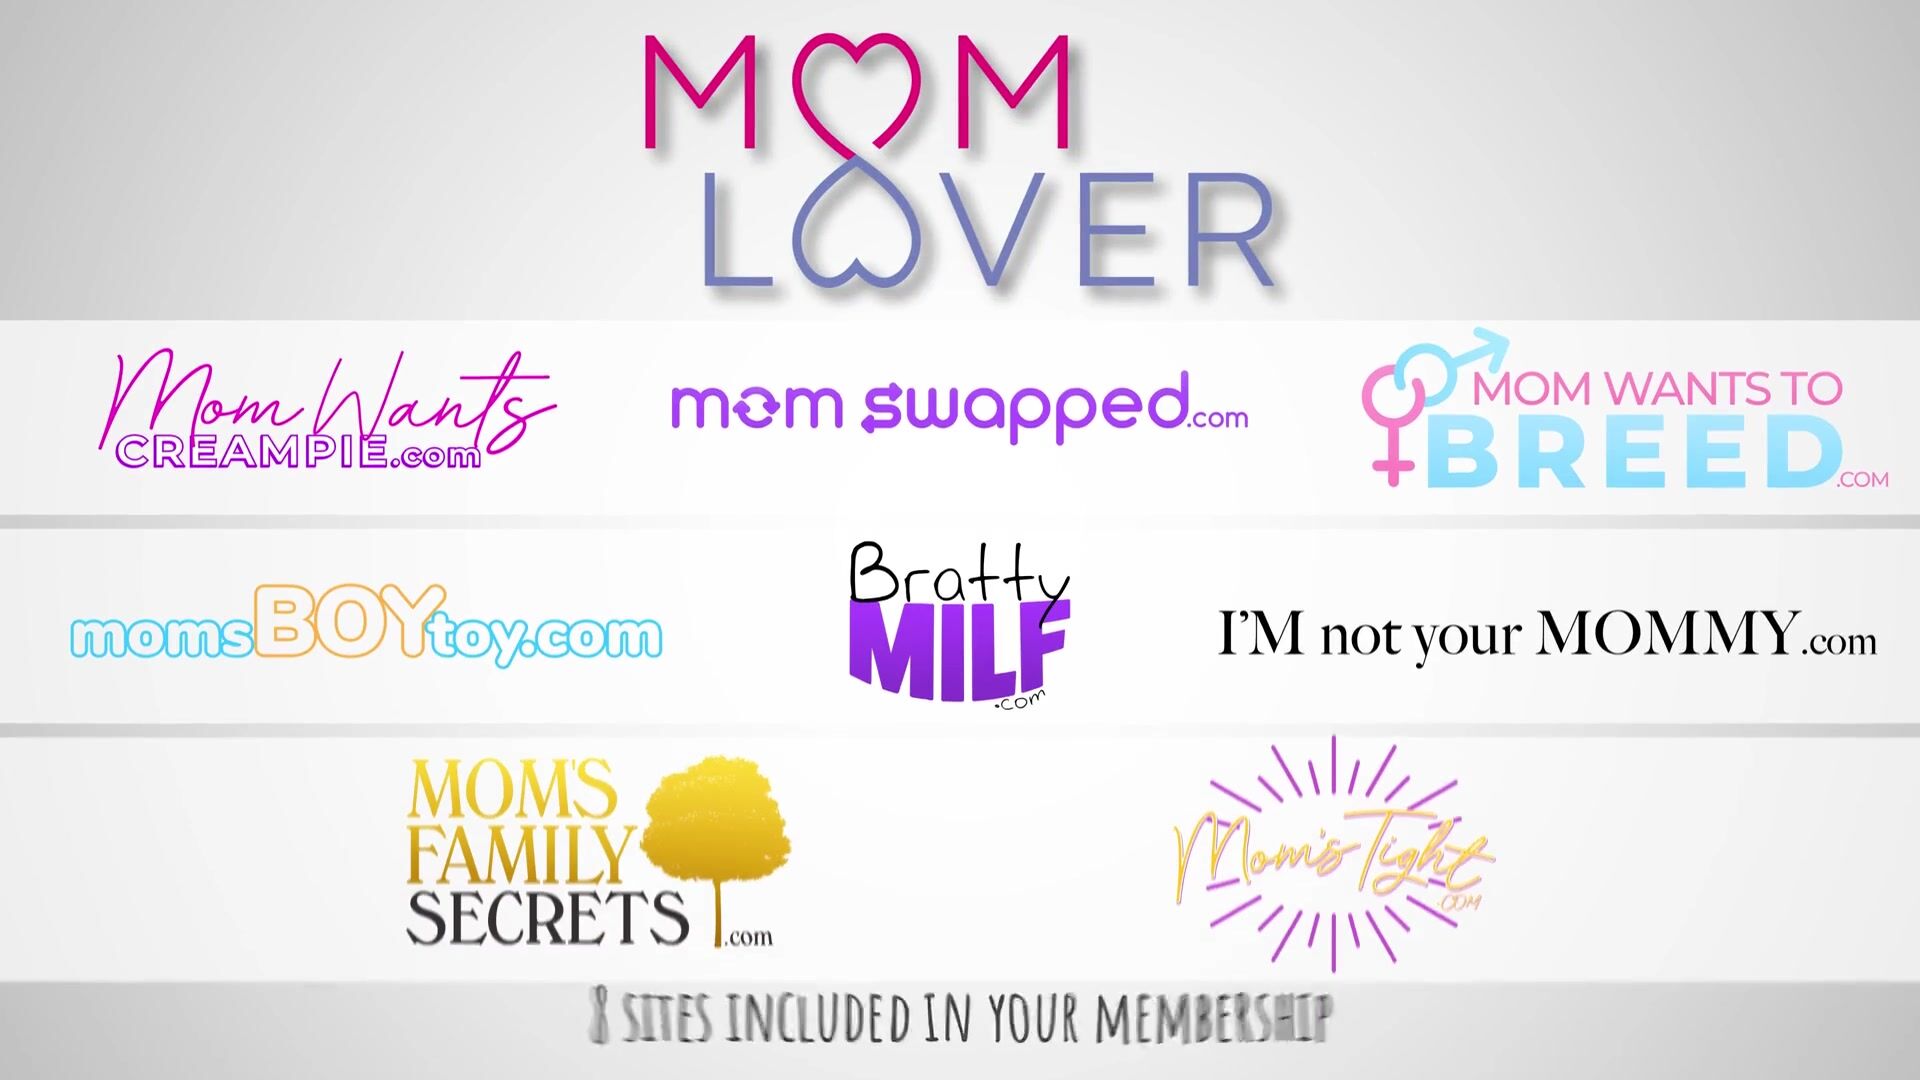 Mom lover com